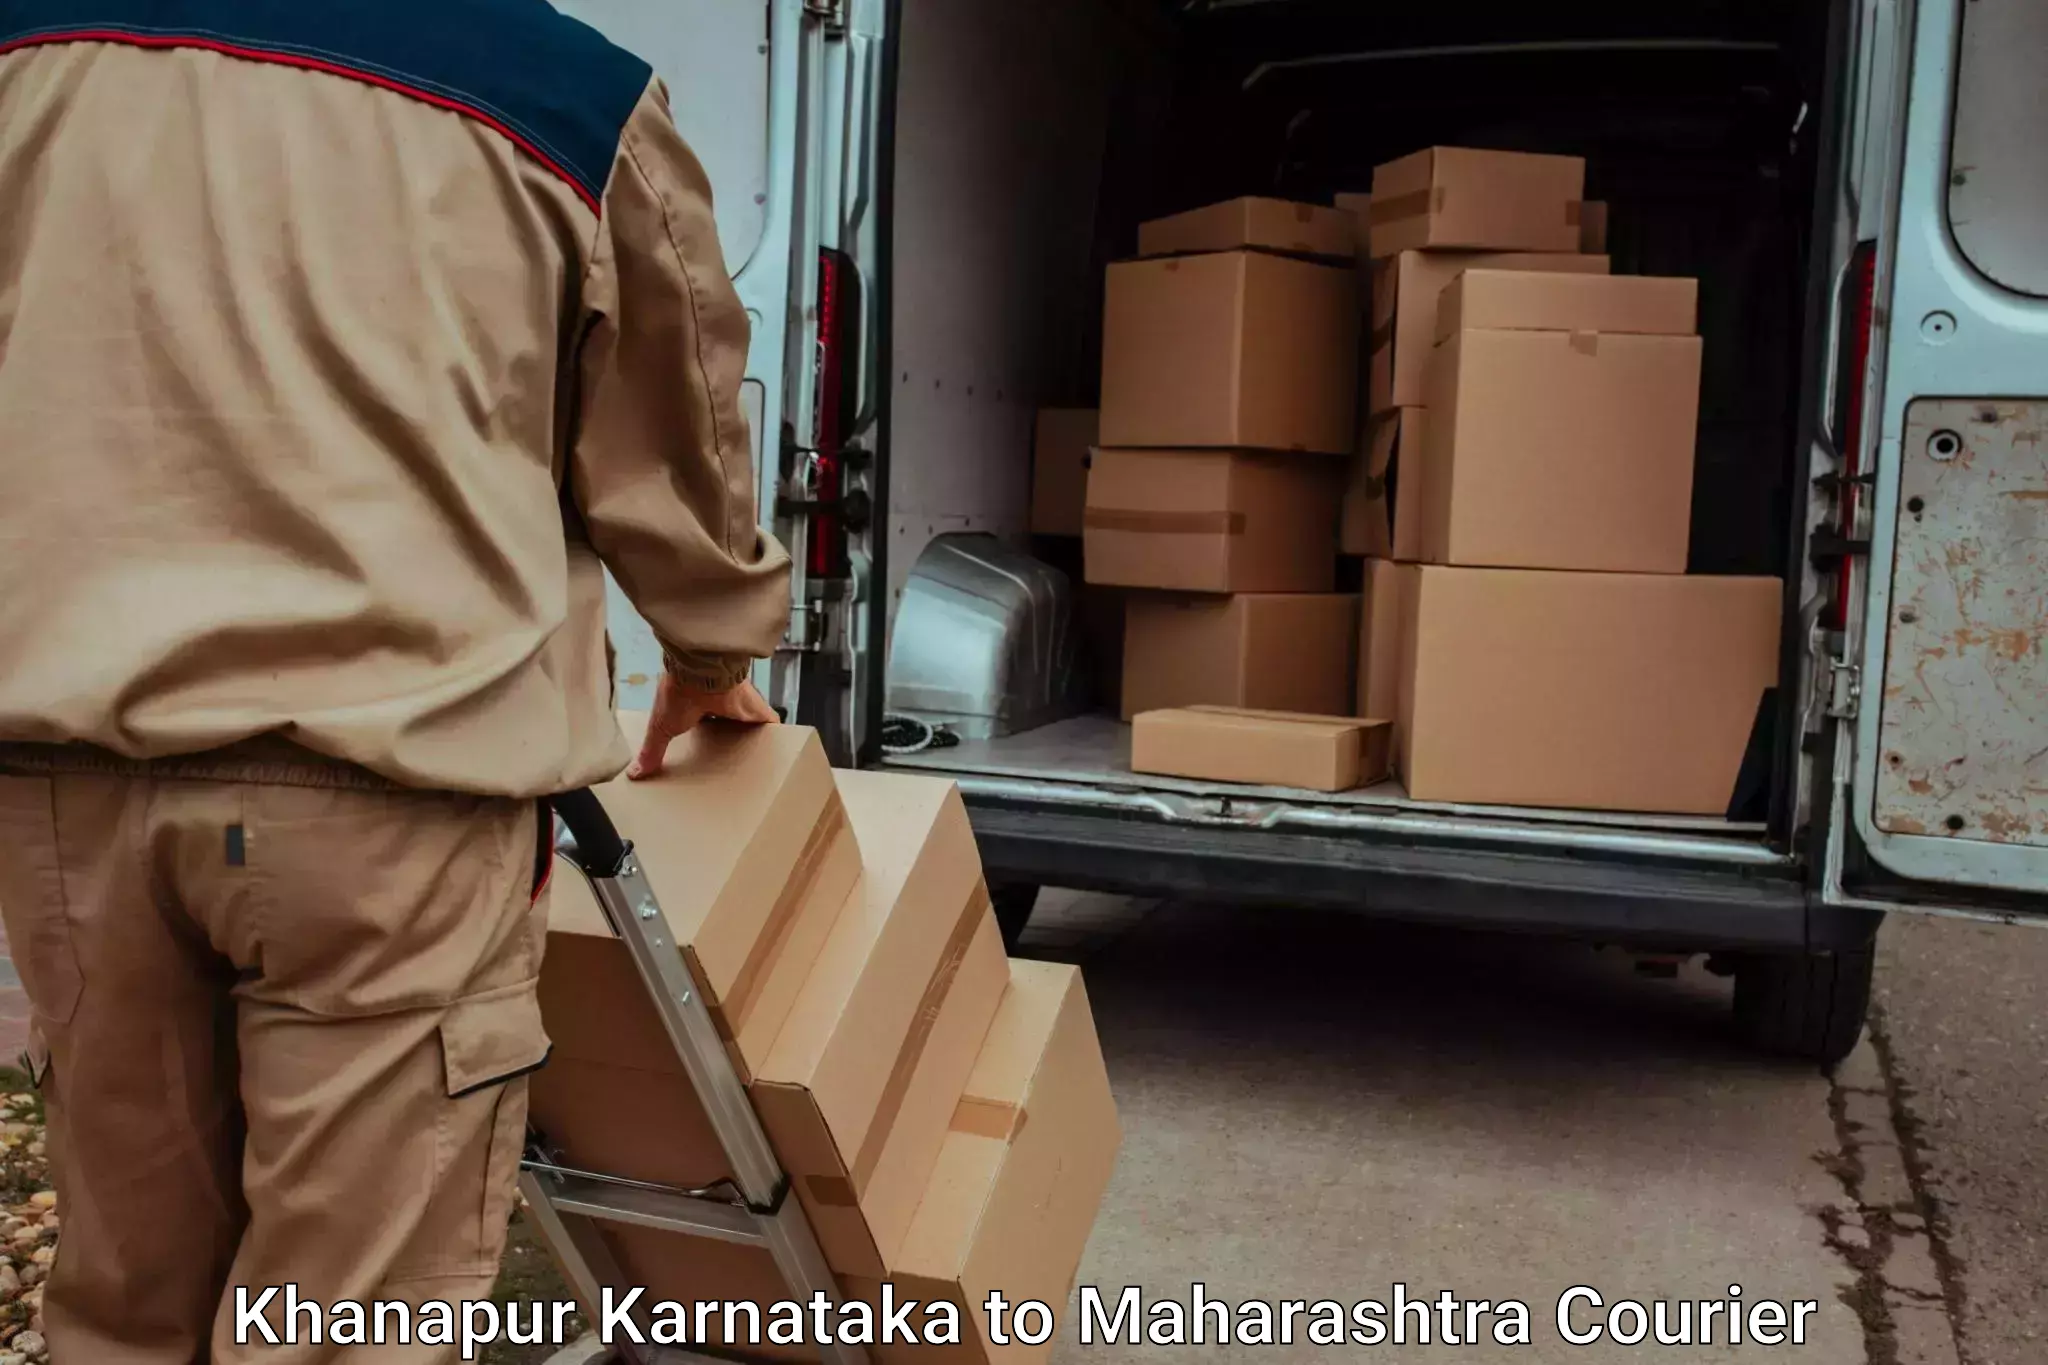 Luggage transport consulting in Khanapur Karnataka to Ramtek